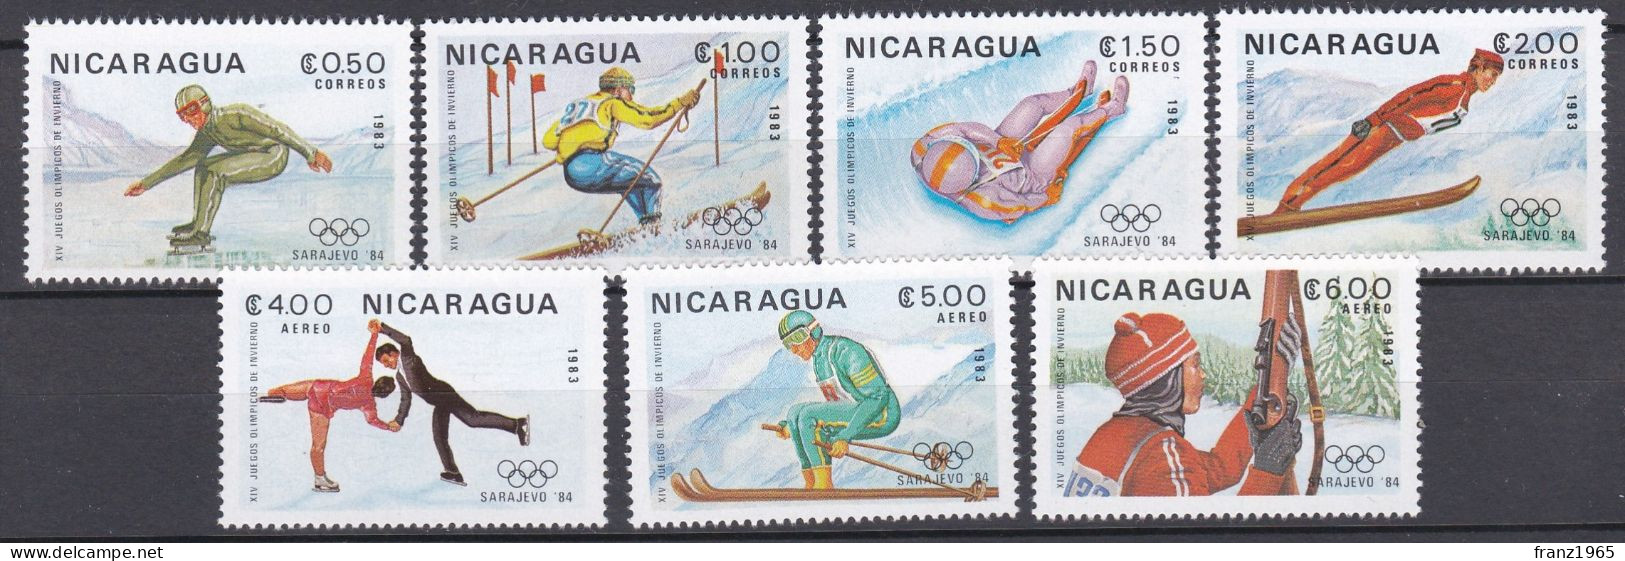 Nicaragua - Olympics Games 1984 - Invierno 1984: Sarajevo